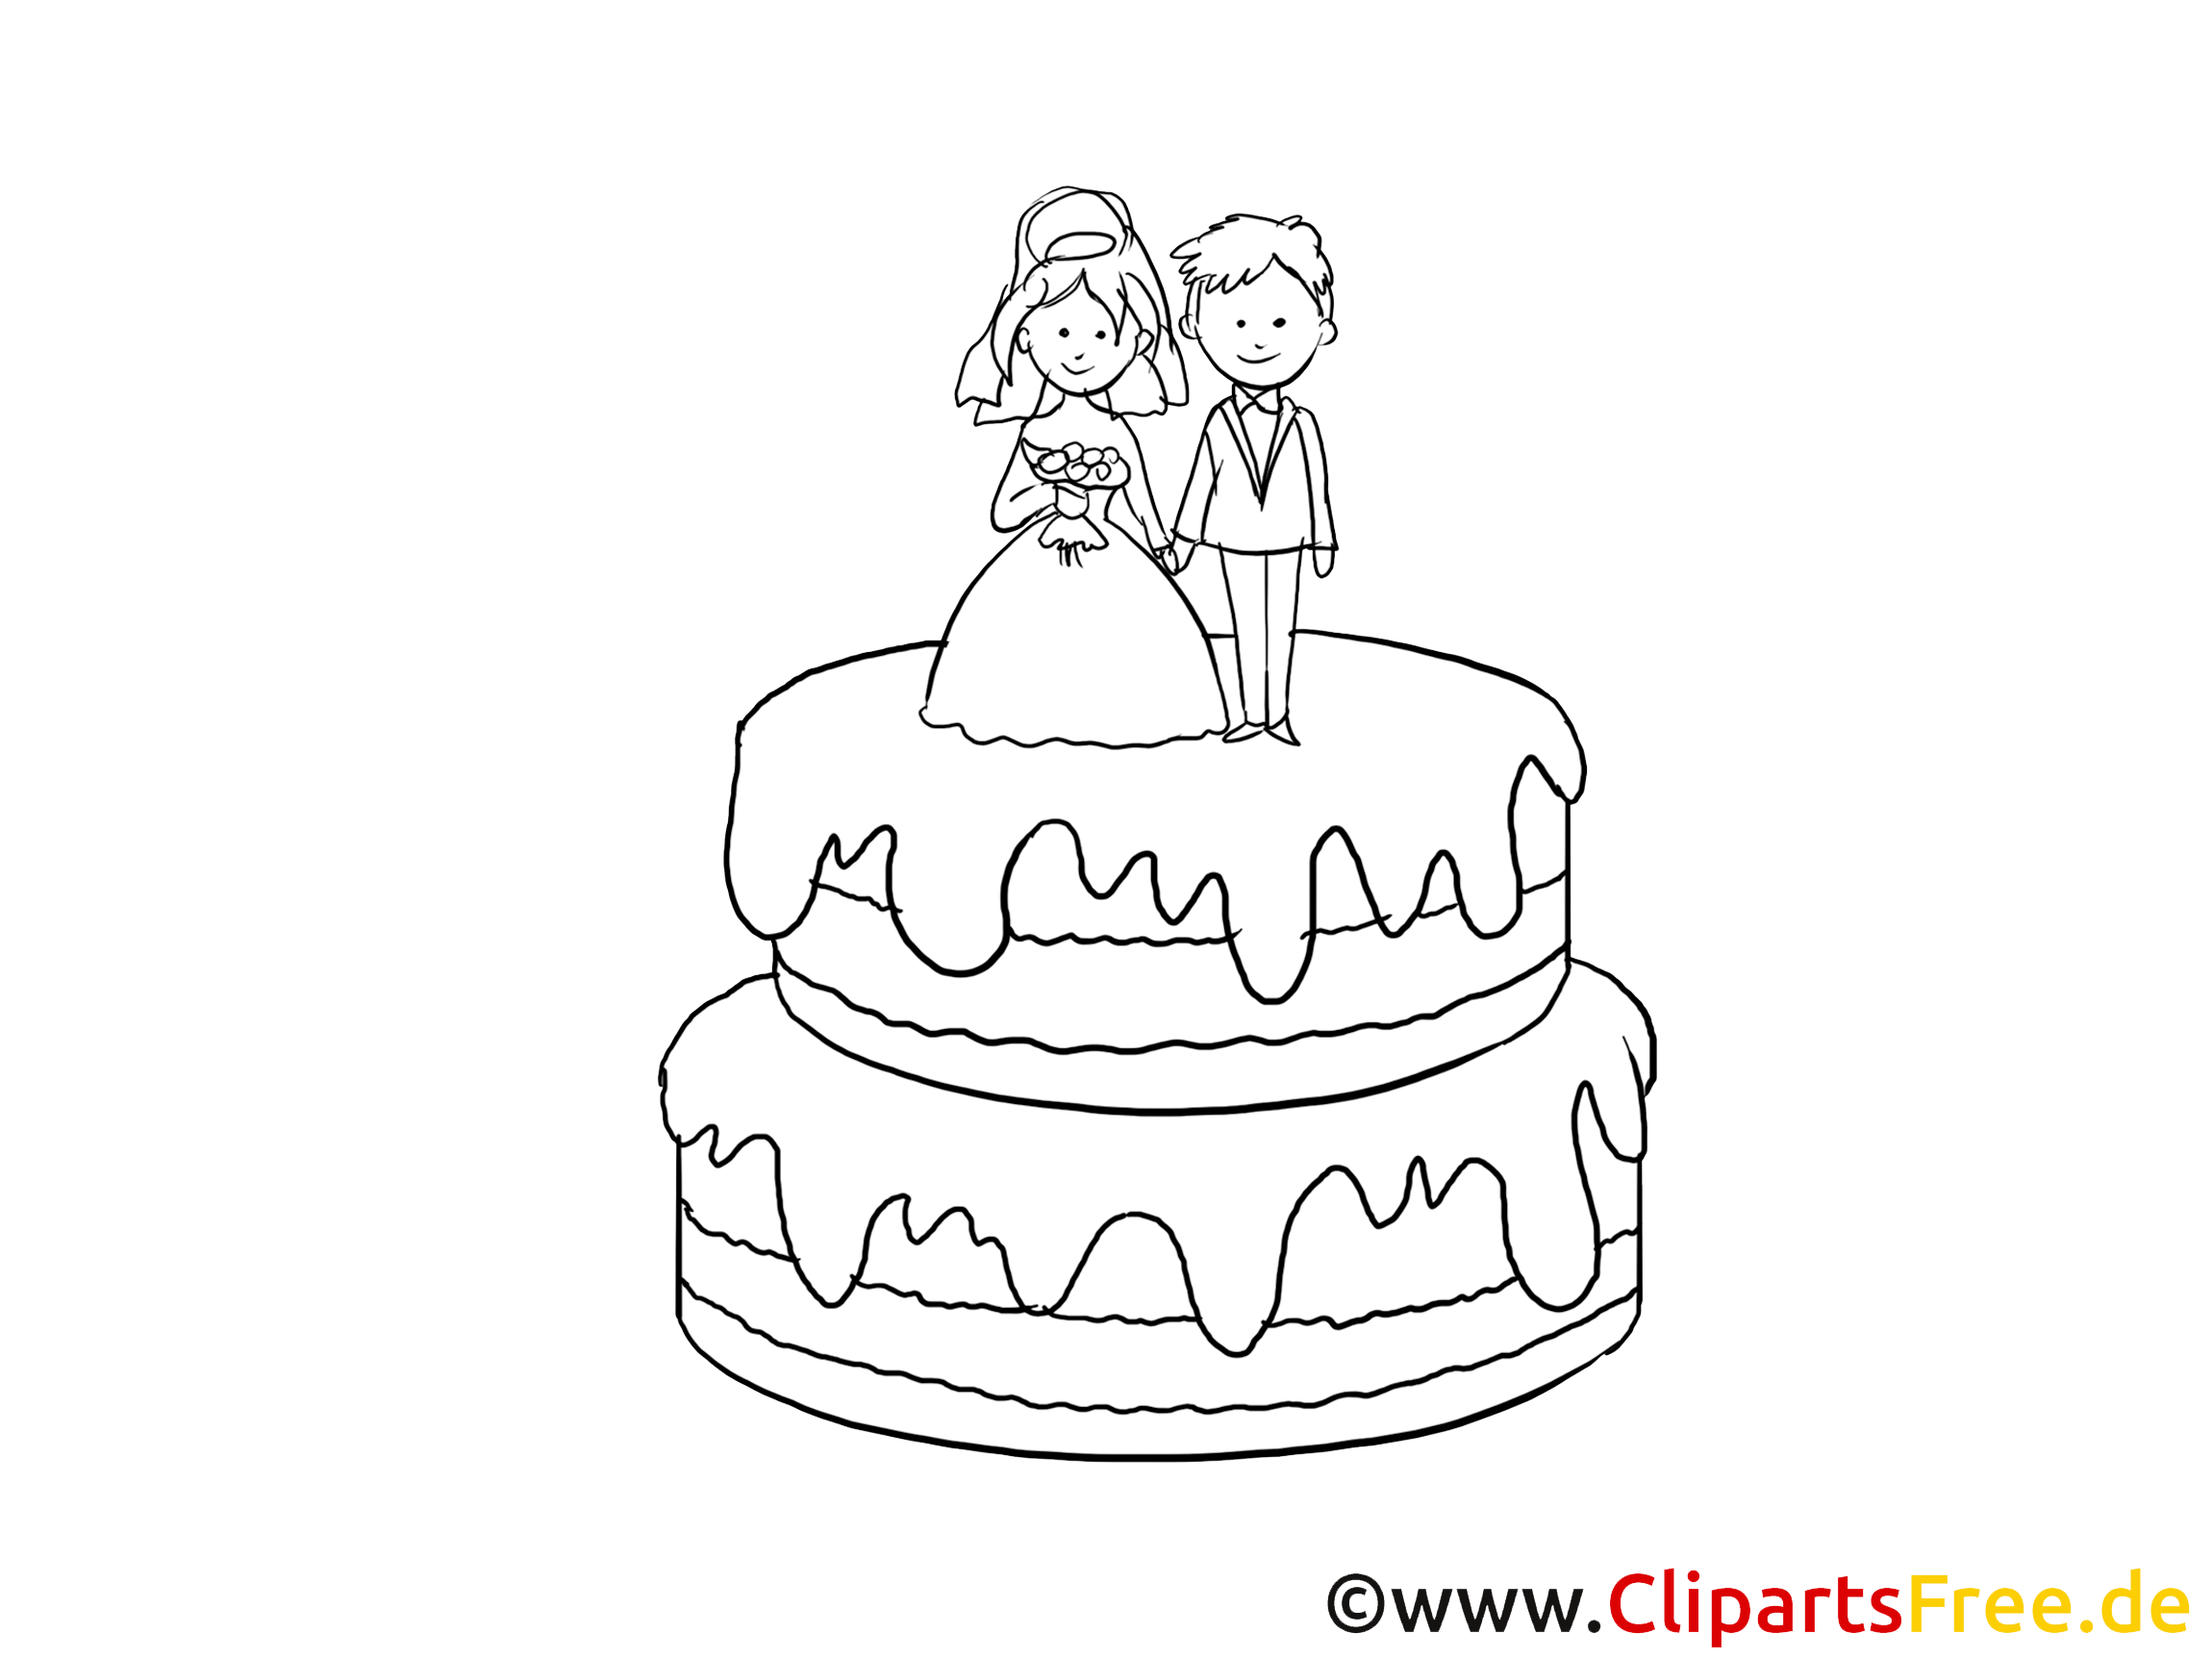 clipart kuchen torte - photo #17